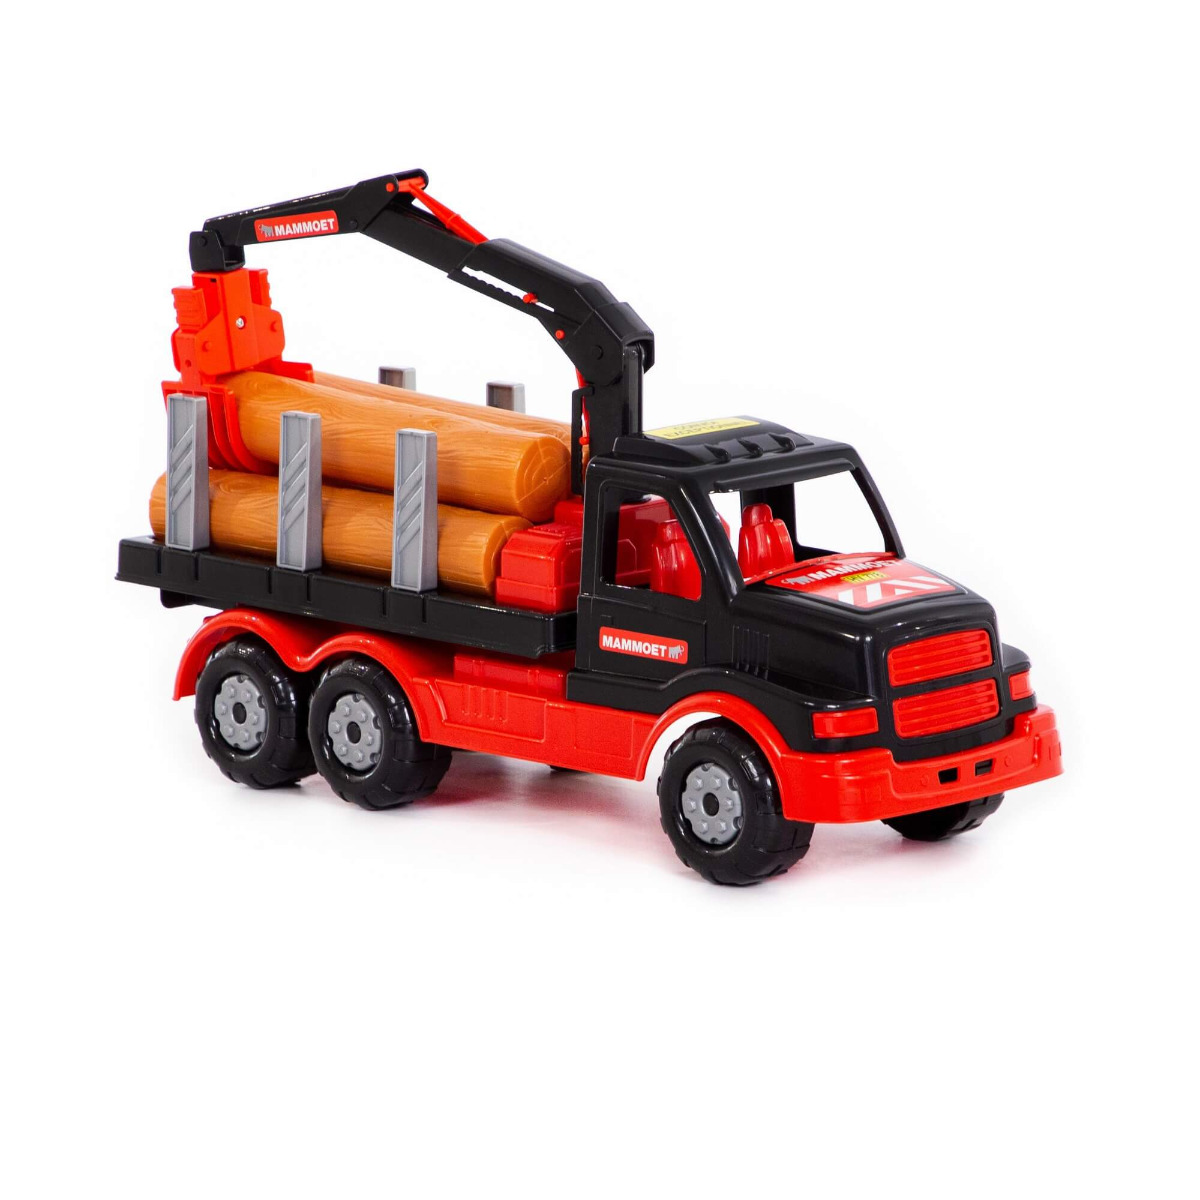 ხეტყის საზიდი სატვირთო მანქანა - Mammoet Timber Truck - 87751 pg-81094color Red 